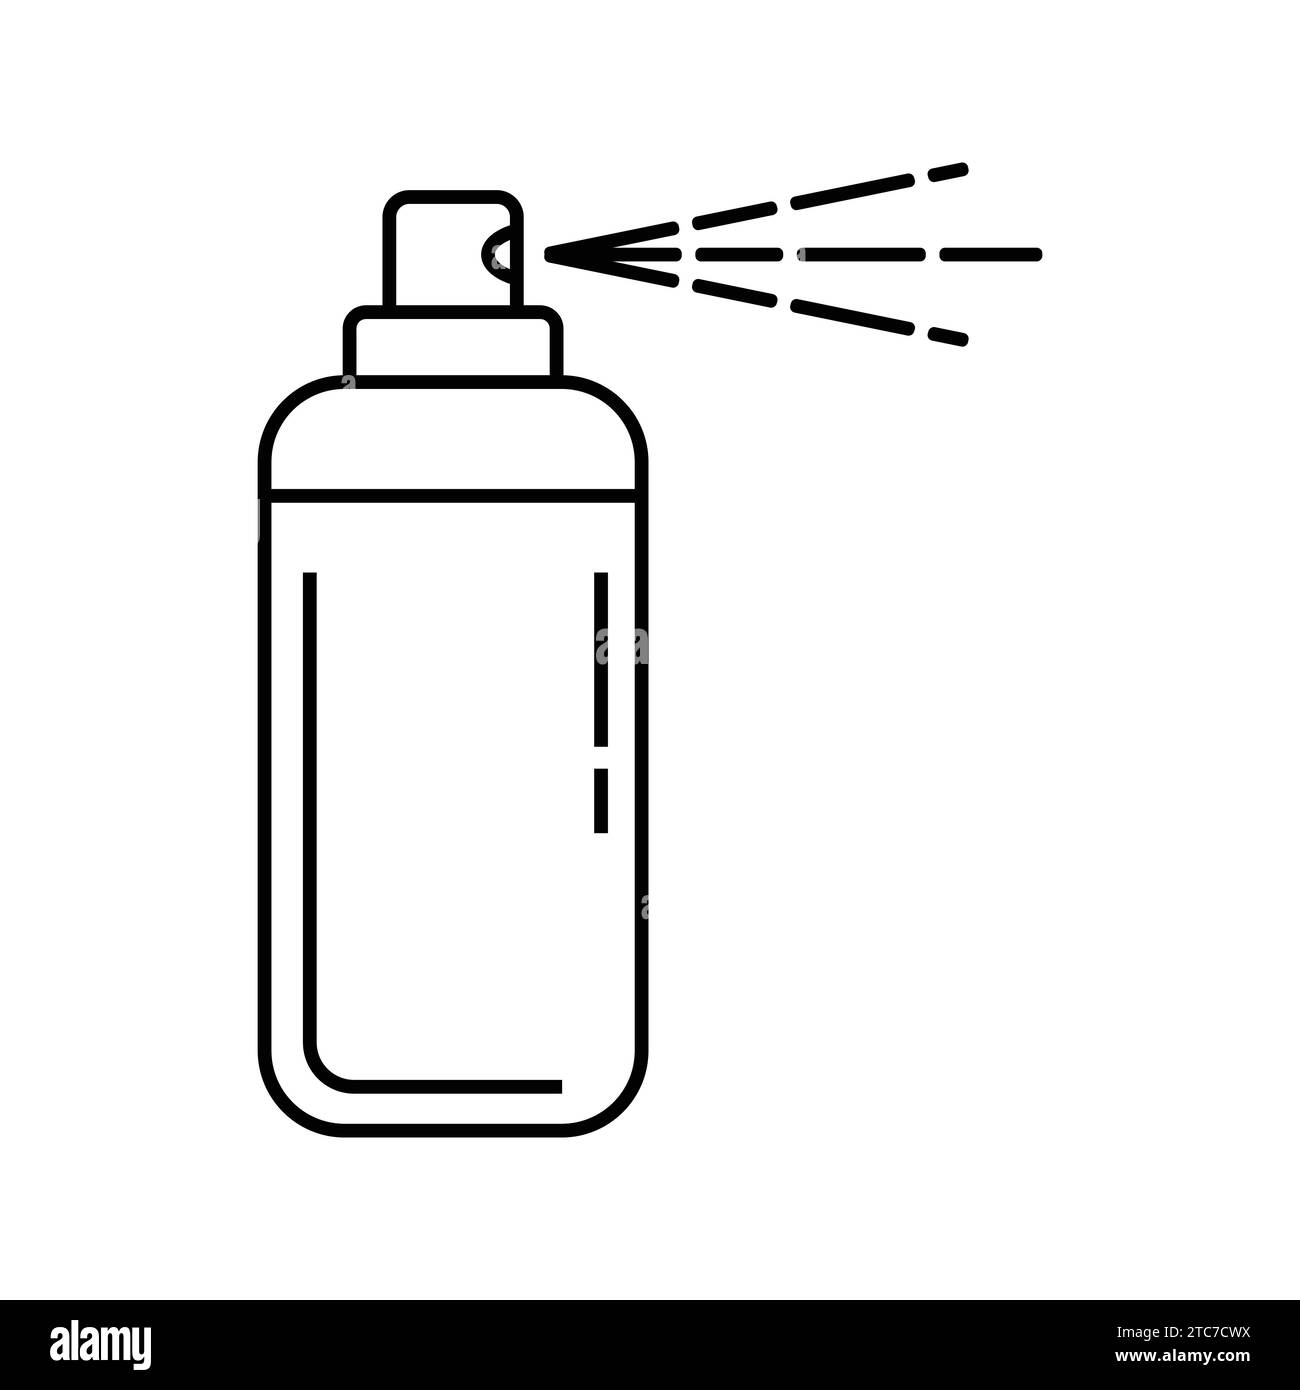 bottle spray icon vector Stock Vector